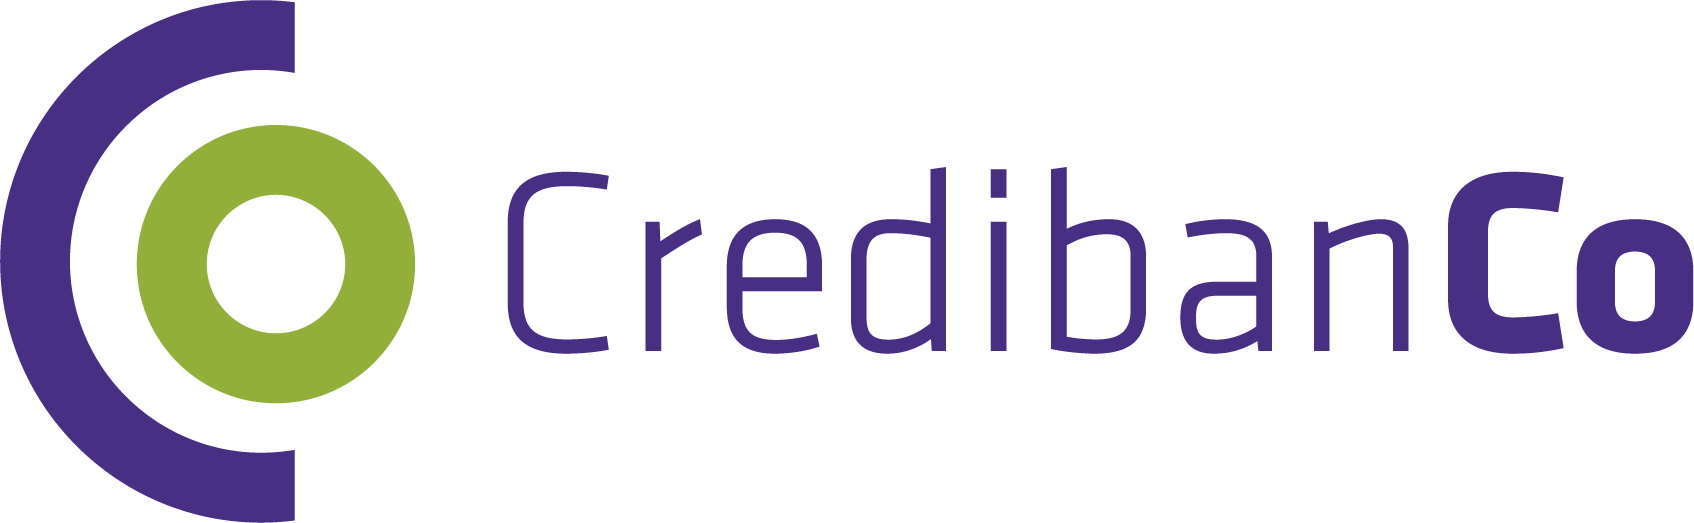 Logo-credibanco-01